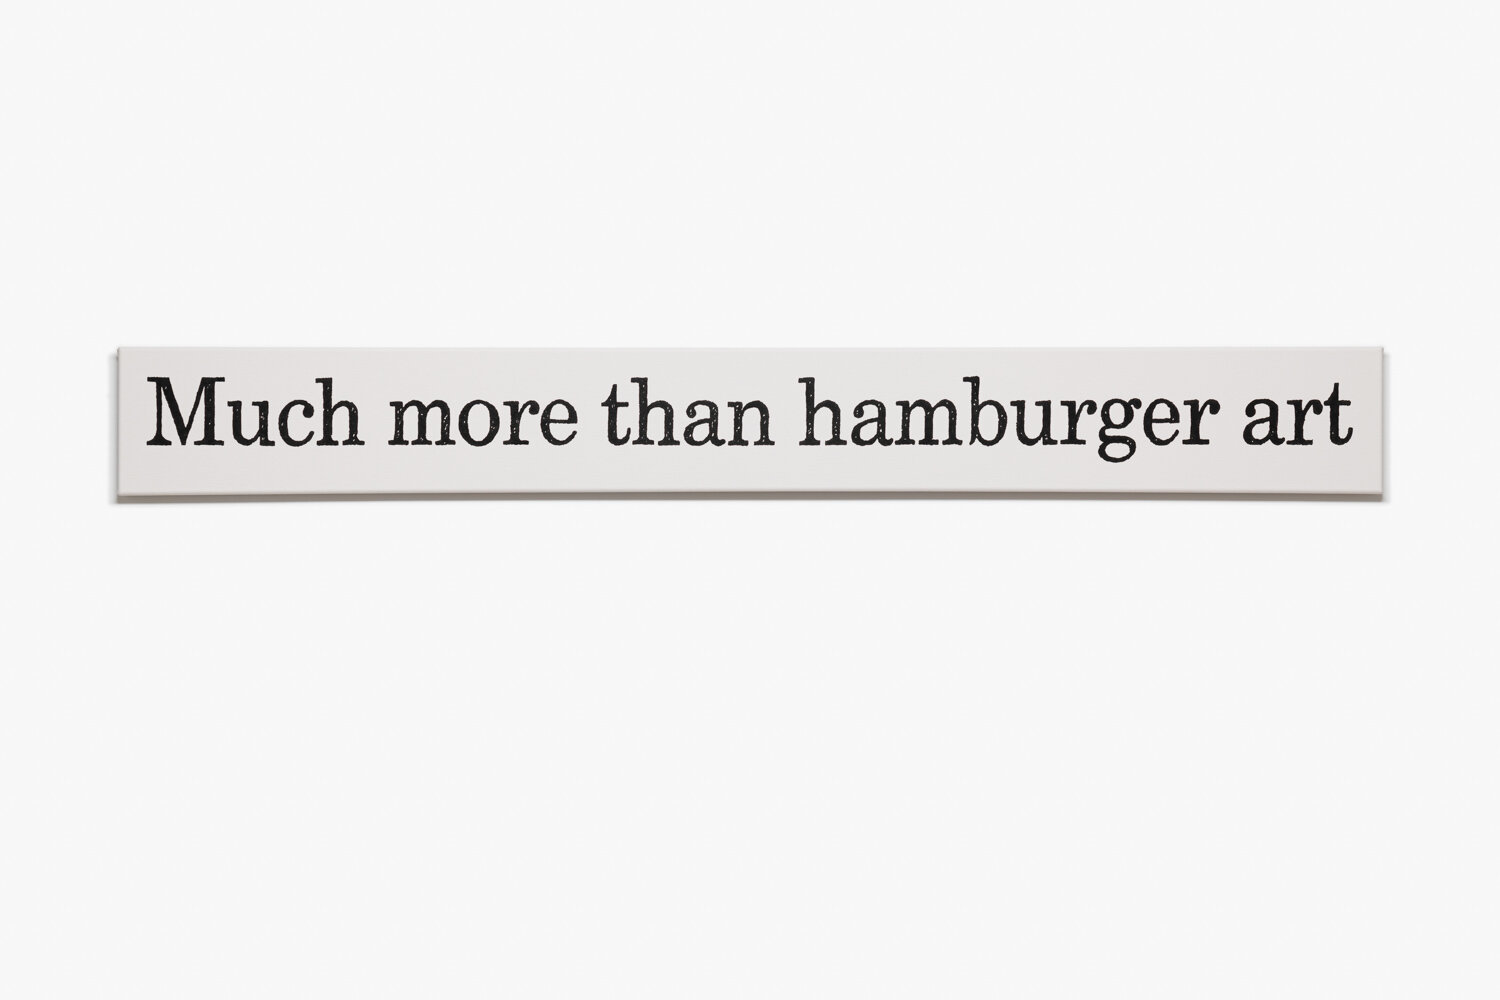 Much more than hamburger art (June 16, 1990) 2021